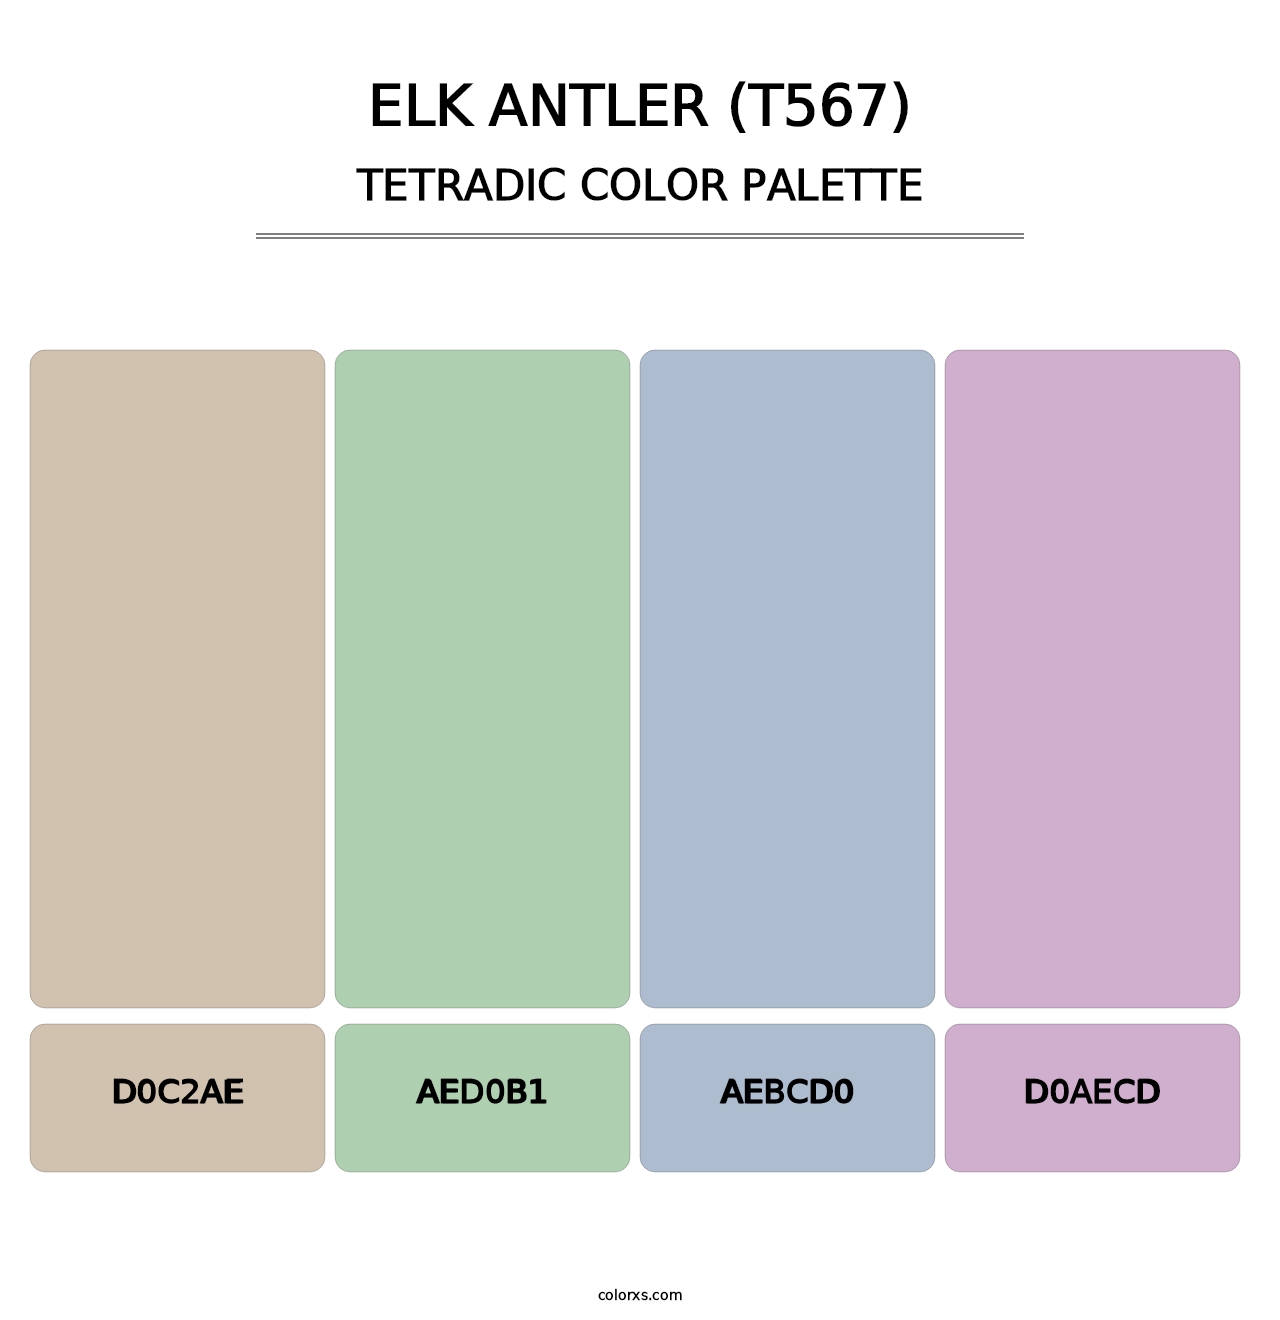 Elk Antler (T567) - Tetradic Color Palette